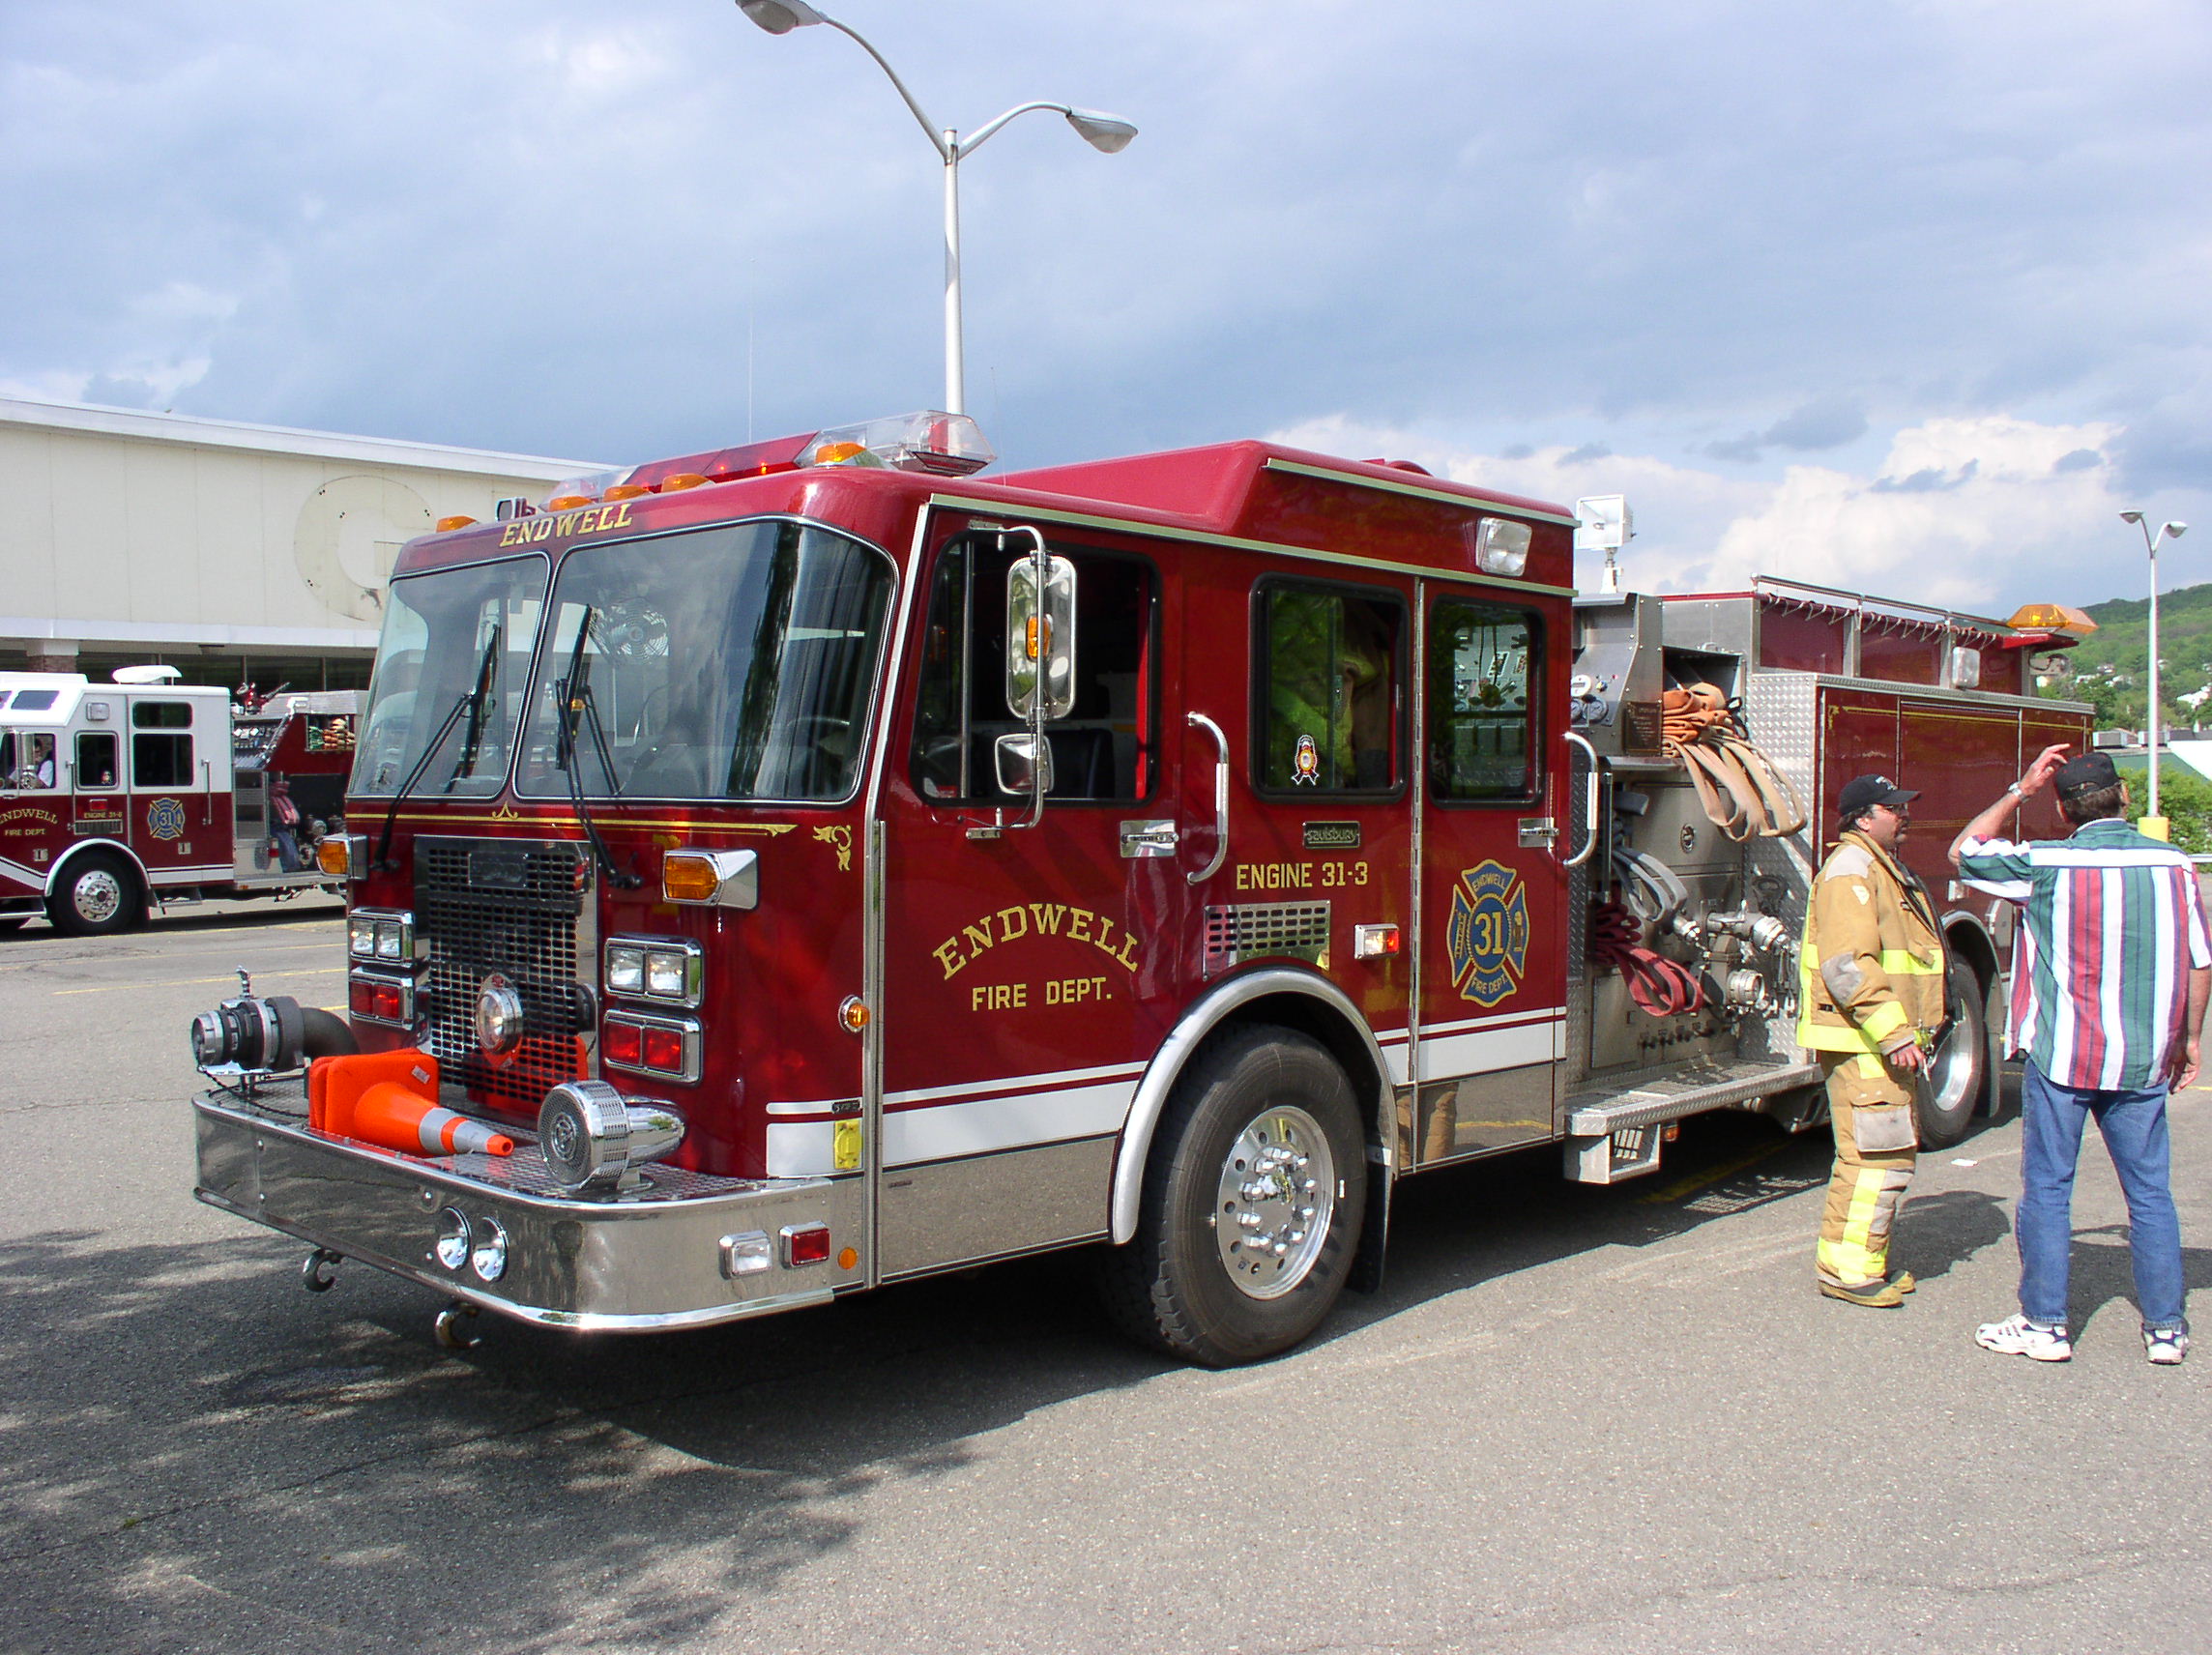 05-30-03  Response - Fire - Car Fire